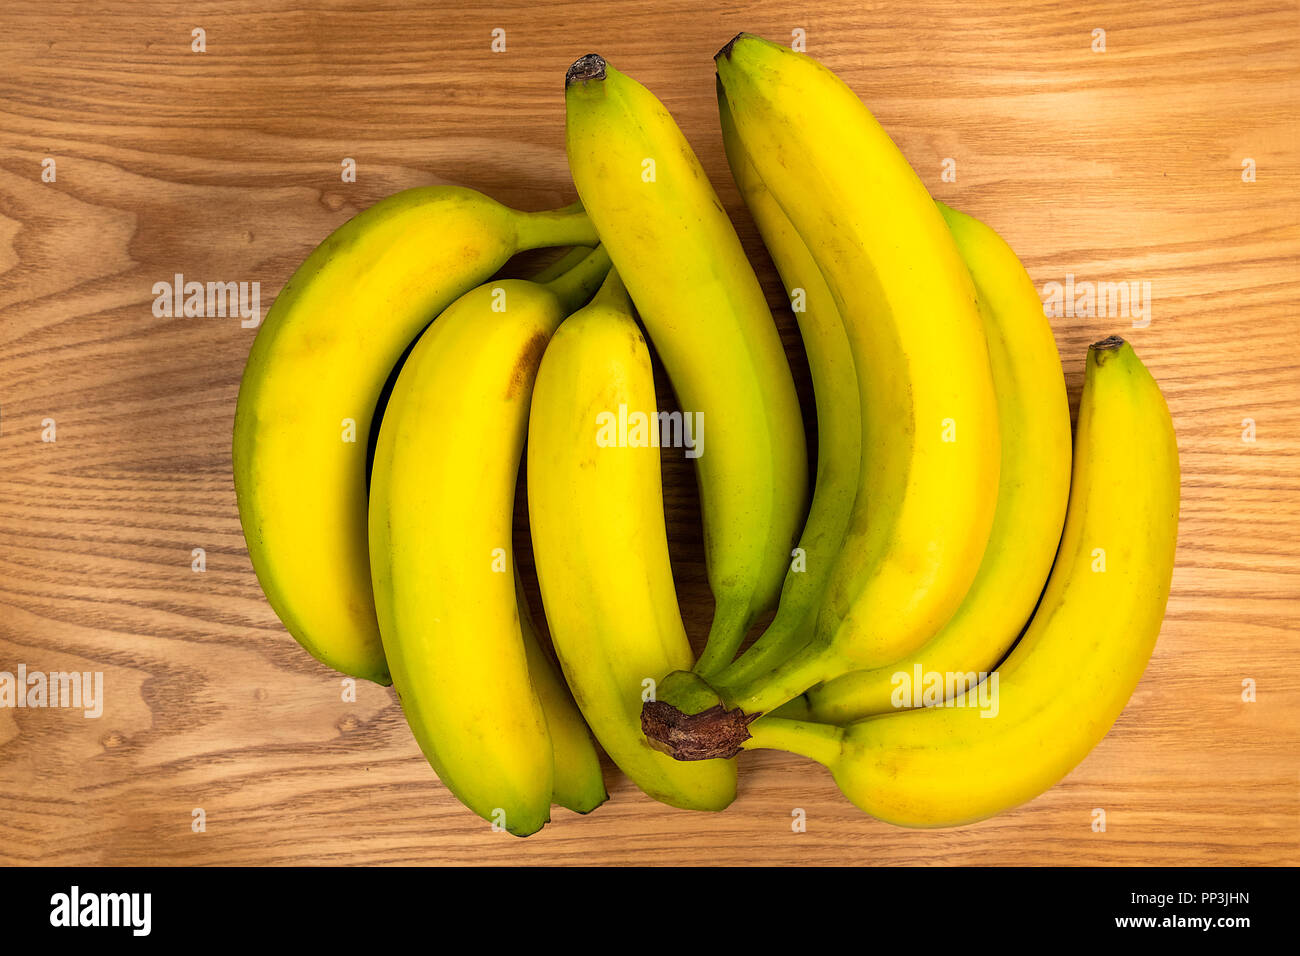 Los plátanos en una placa de madera Foto de stock